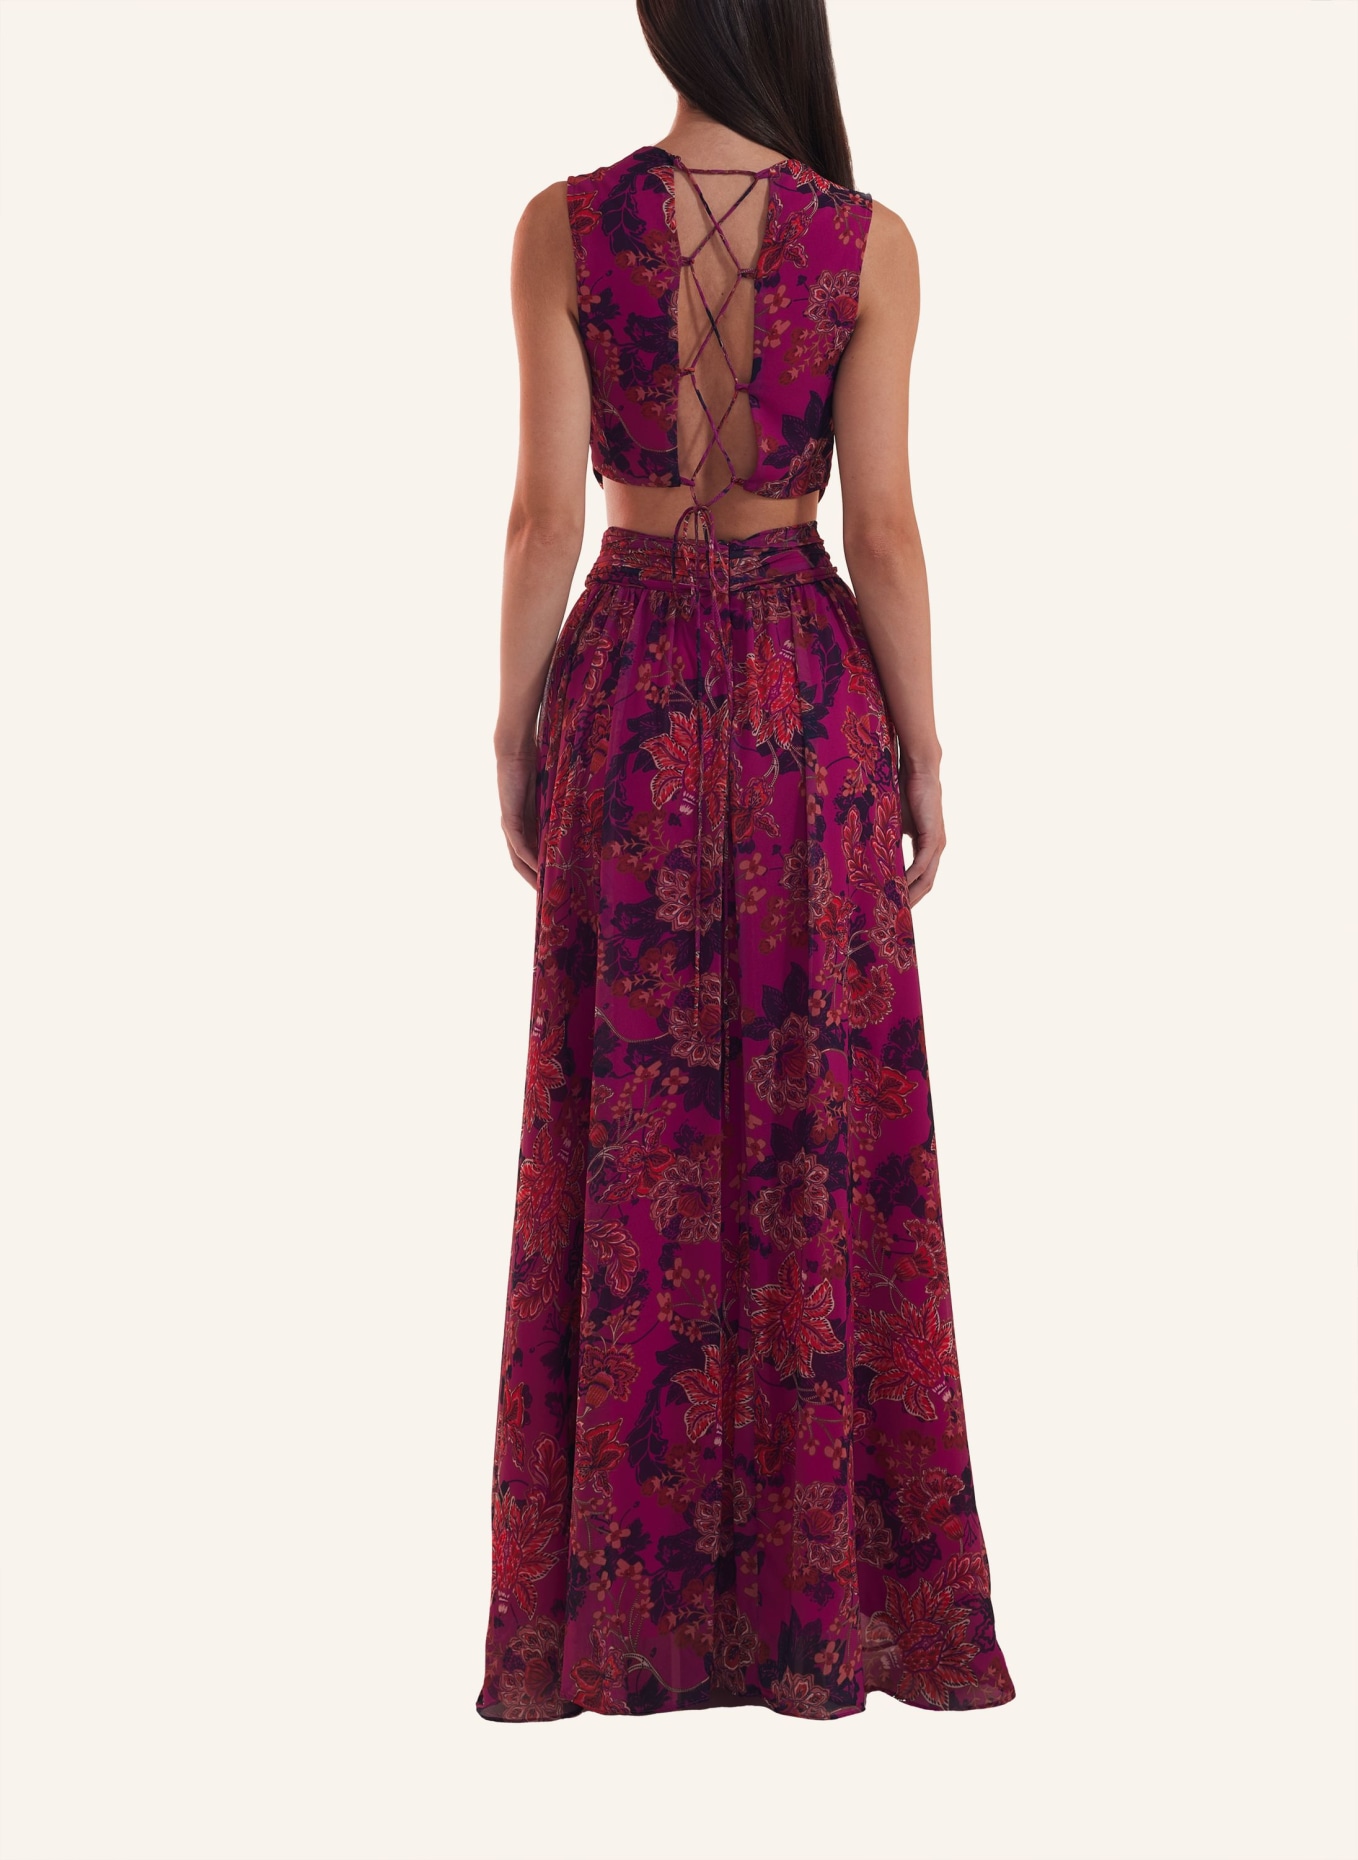 ADLYSH Abendkleid FAIRYTALE DRESS, Farbe: DUNKELROT (Bild 3)